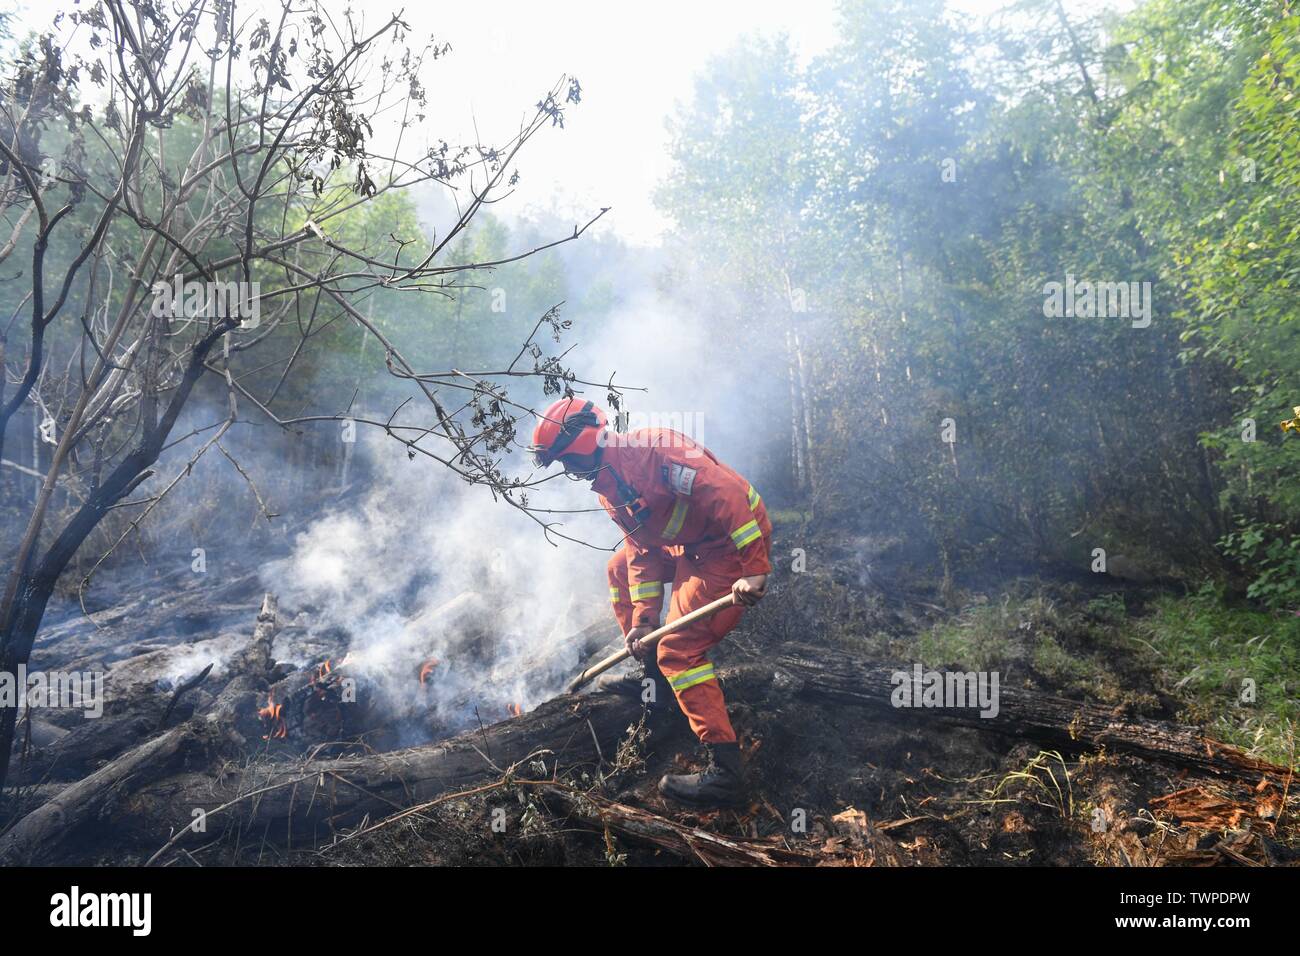 Genhe. 22 Juin, 2019. Un pompier examine les lieux d'un incendie de forêt à Xiushan Ferme du Grand Hinggan, montagnes du nord de la Chine intérieure d'un incendie de forêt qui ont fait rage pendant trois jours dans le nord de la Chine, région autonome de Mongolie intérieure a été contenue, les autorités locales ont déclaré samedi. L'opération de nettoyage est en cours à Xiushan, selon le siège de l'incendie. Après un énorme effort de plus de 5 000 pompiers, le feu a été mis sous contrôle sur tous les fronts par 4:40 h le samedi. Credit : Liu Lei/Xinhua/Alamy Live News Banque D'Images